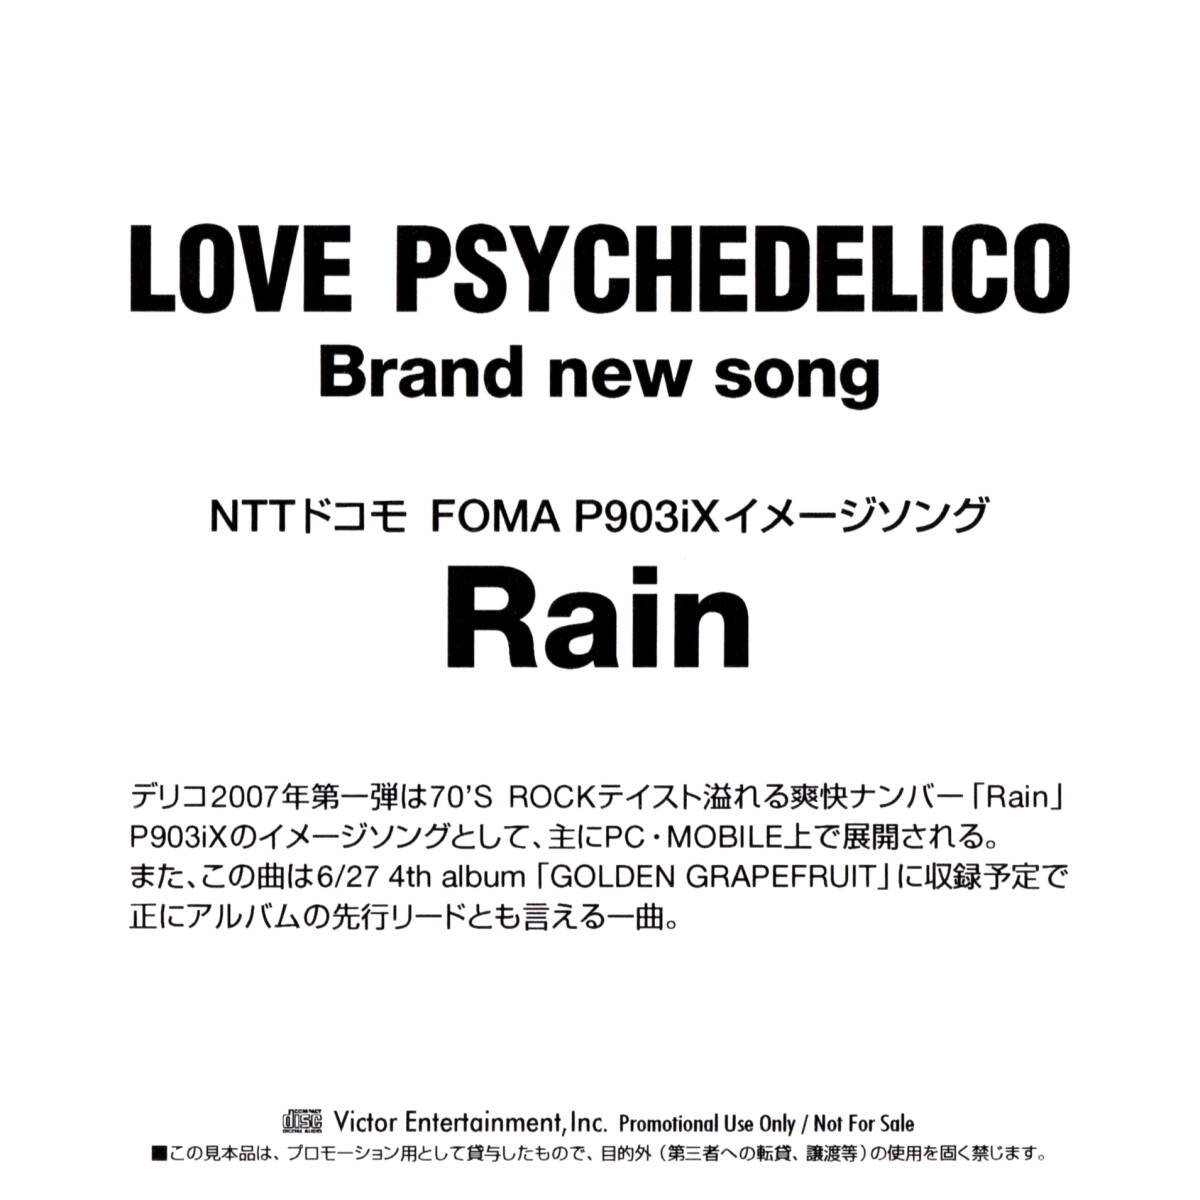 非売品 シングルCD LOVE PSYCHEDELICO Brand new song NTTドコモ FOMA P903iX イメージソング Rain ラブ・サイケデリコ_画像6